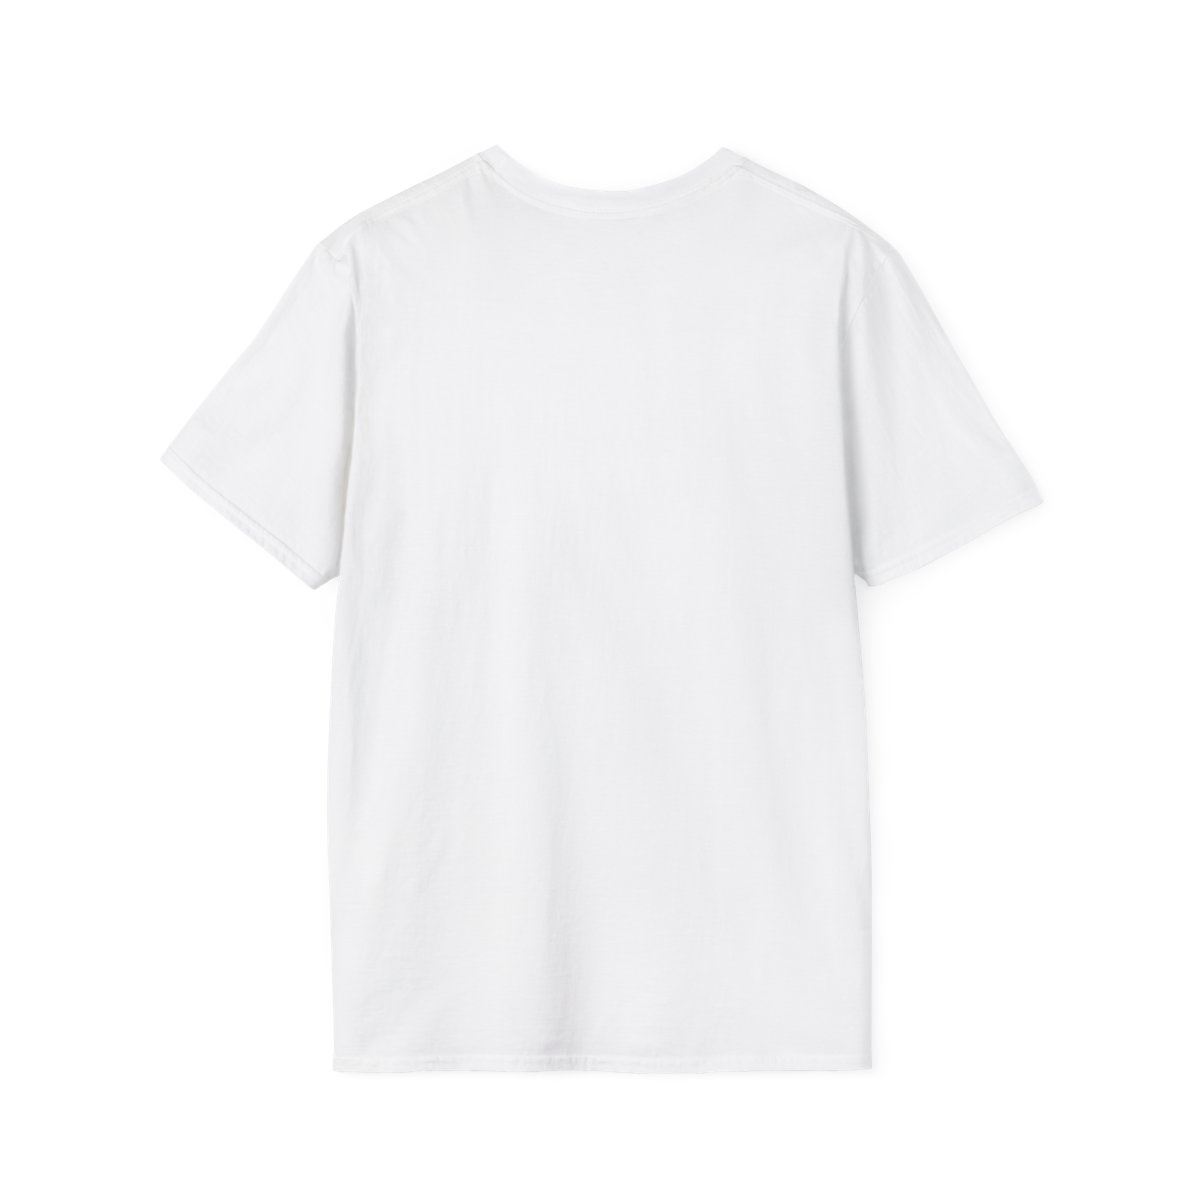 LION - Unisex Softstyle T-Shirt product thumbnail image